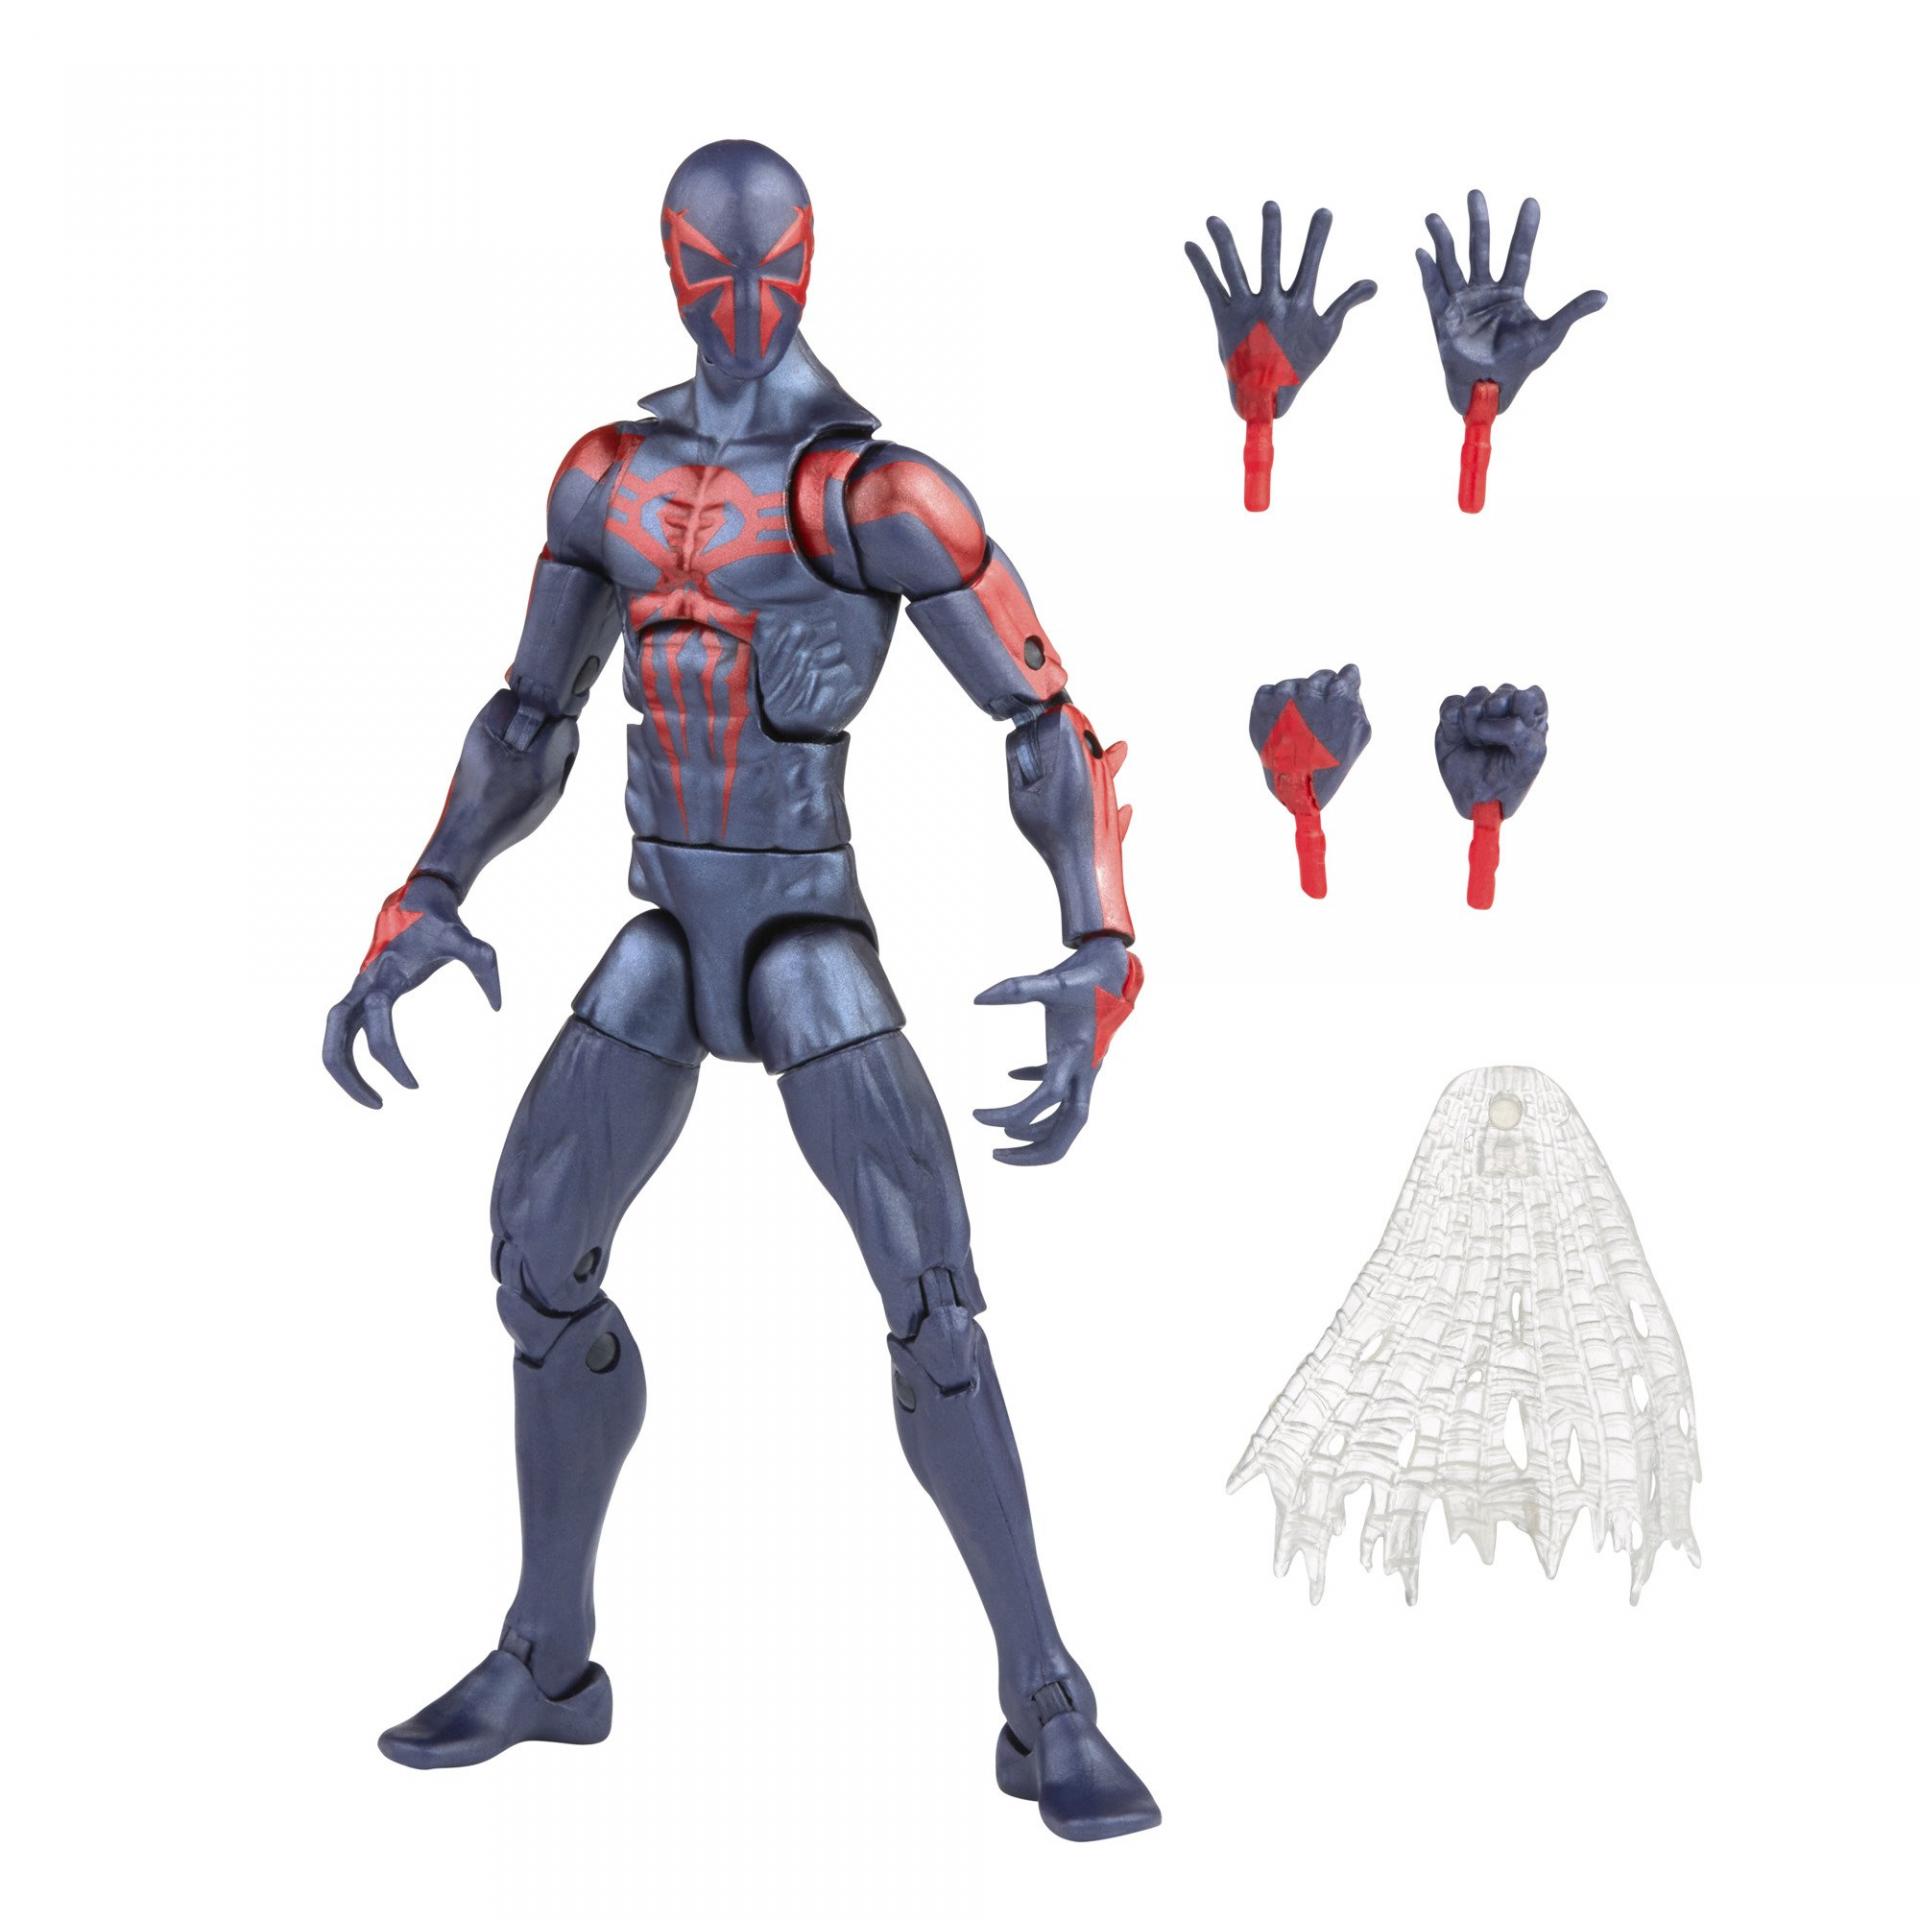 Marvel legends series hasbro spider man 2099 9